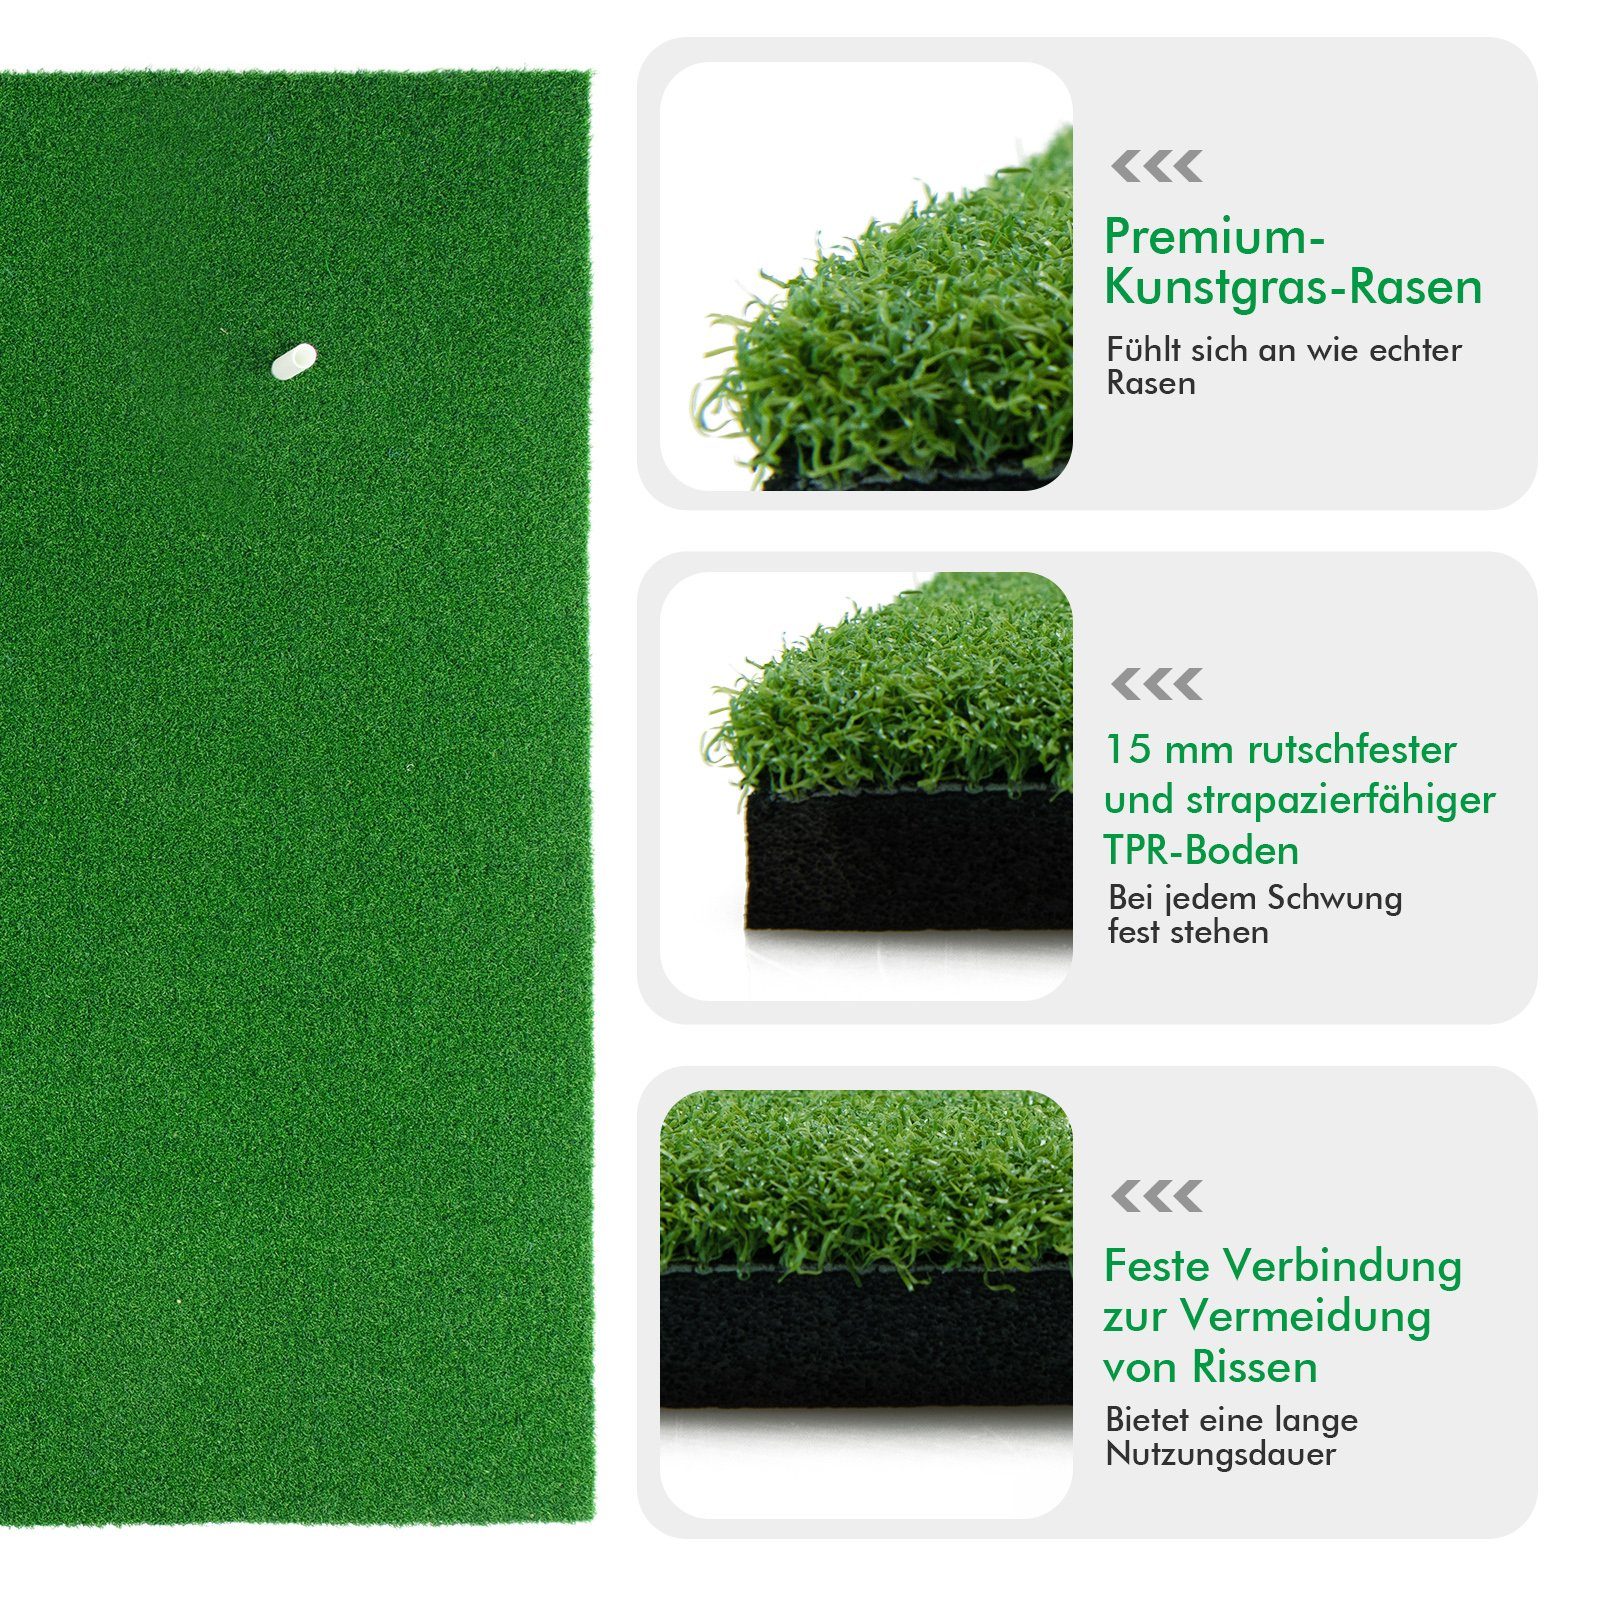 COSTWAY Golf-Abschlagmatte Golfmatte, Gummi-Tees 3 mit 150x100cm